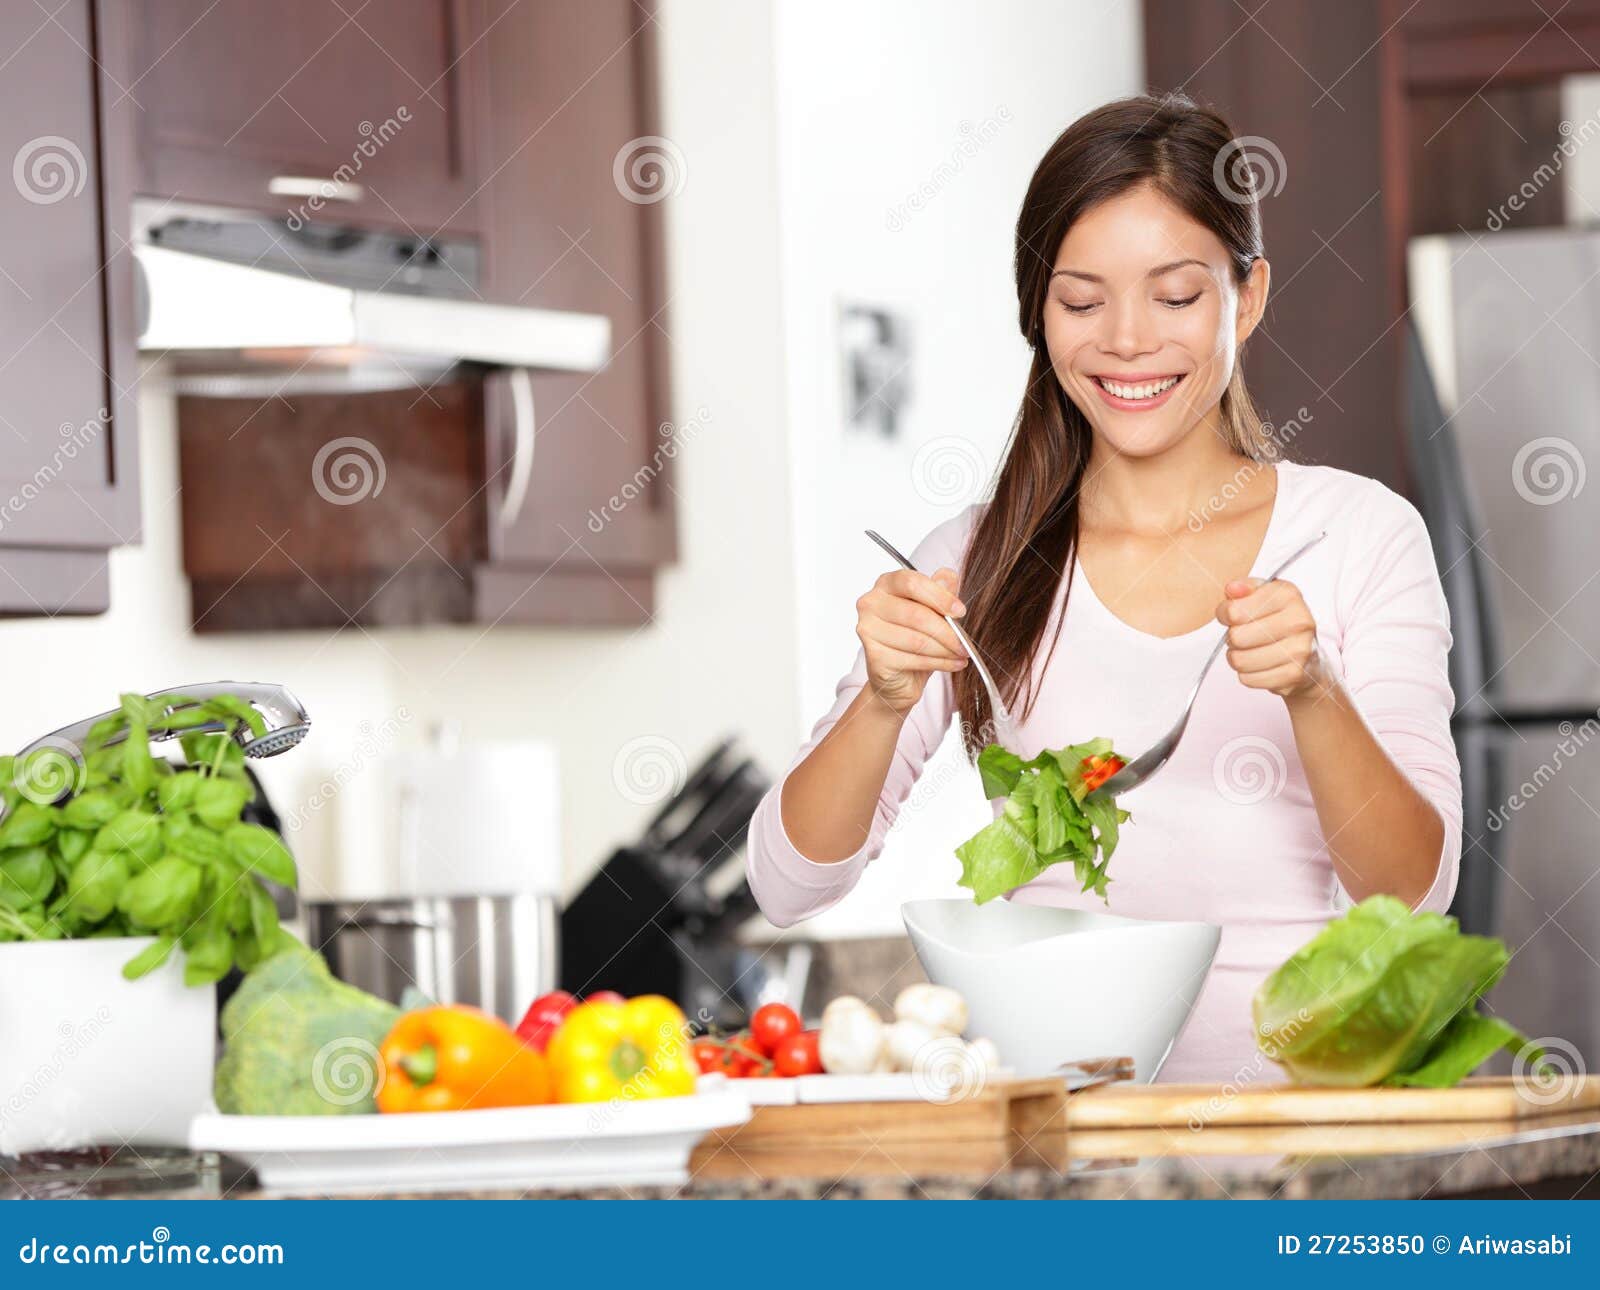 Kobieta robi sałatki w kuchni. Zdrowy łasowania styl życia pojęcie z pięknym młodej kobiety kucharstwem w jej kuchni.